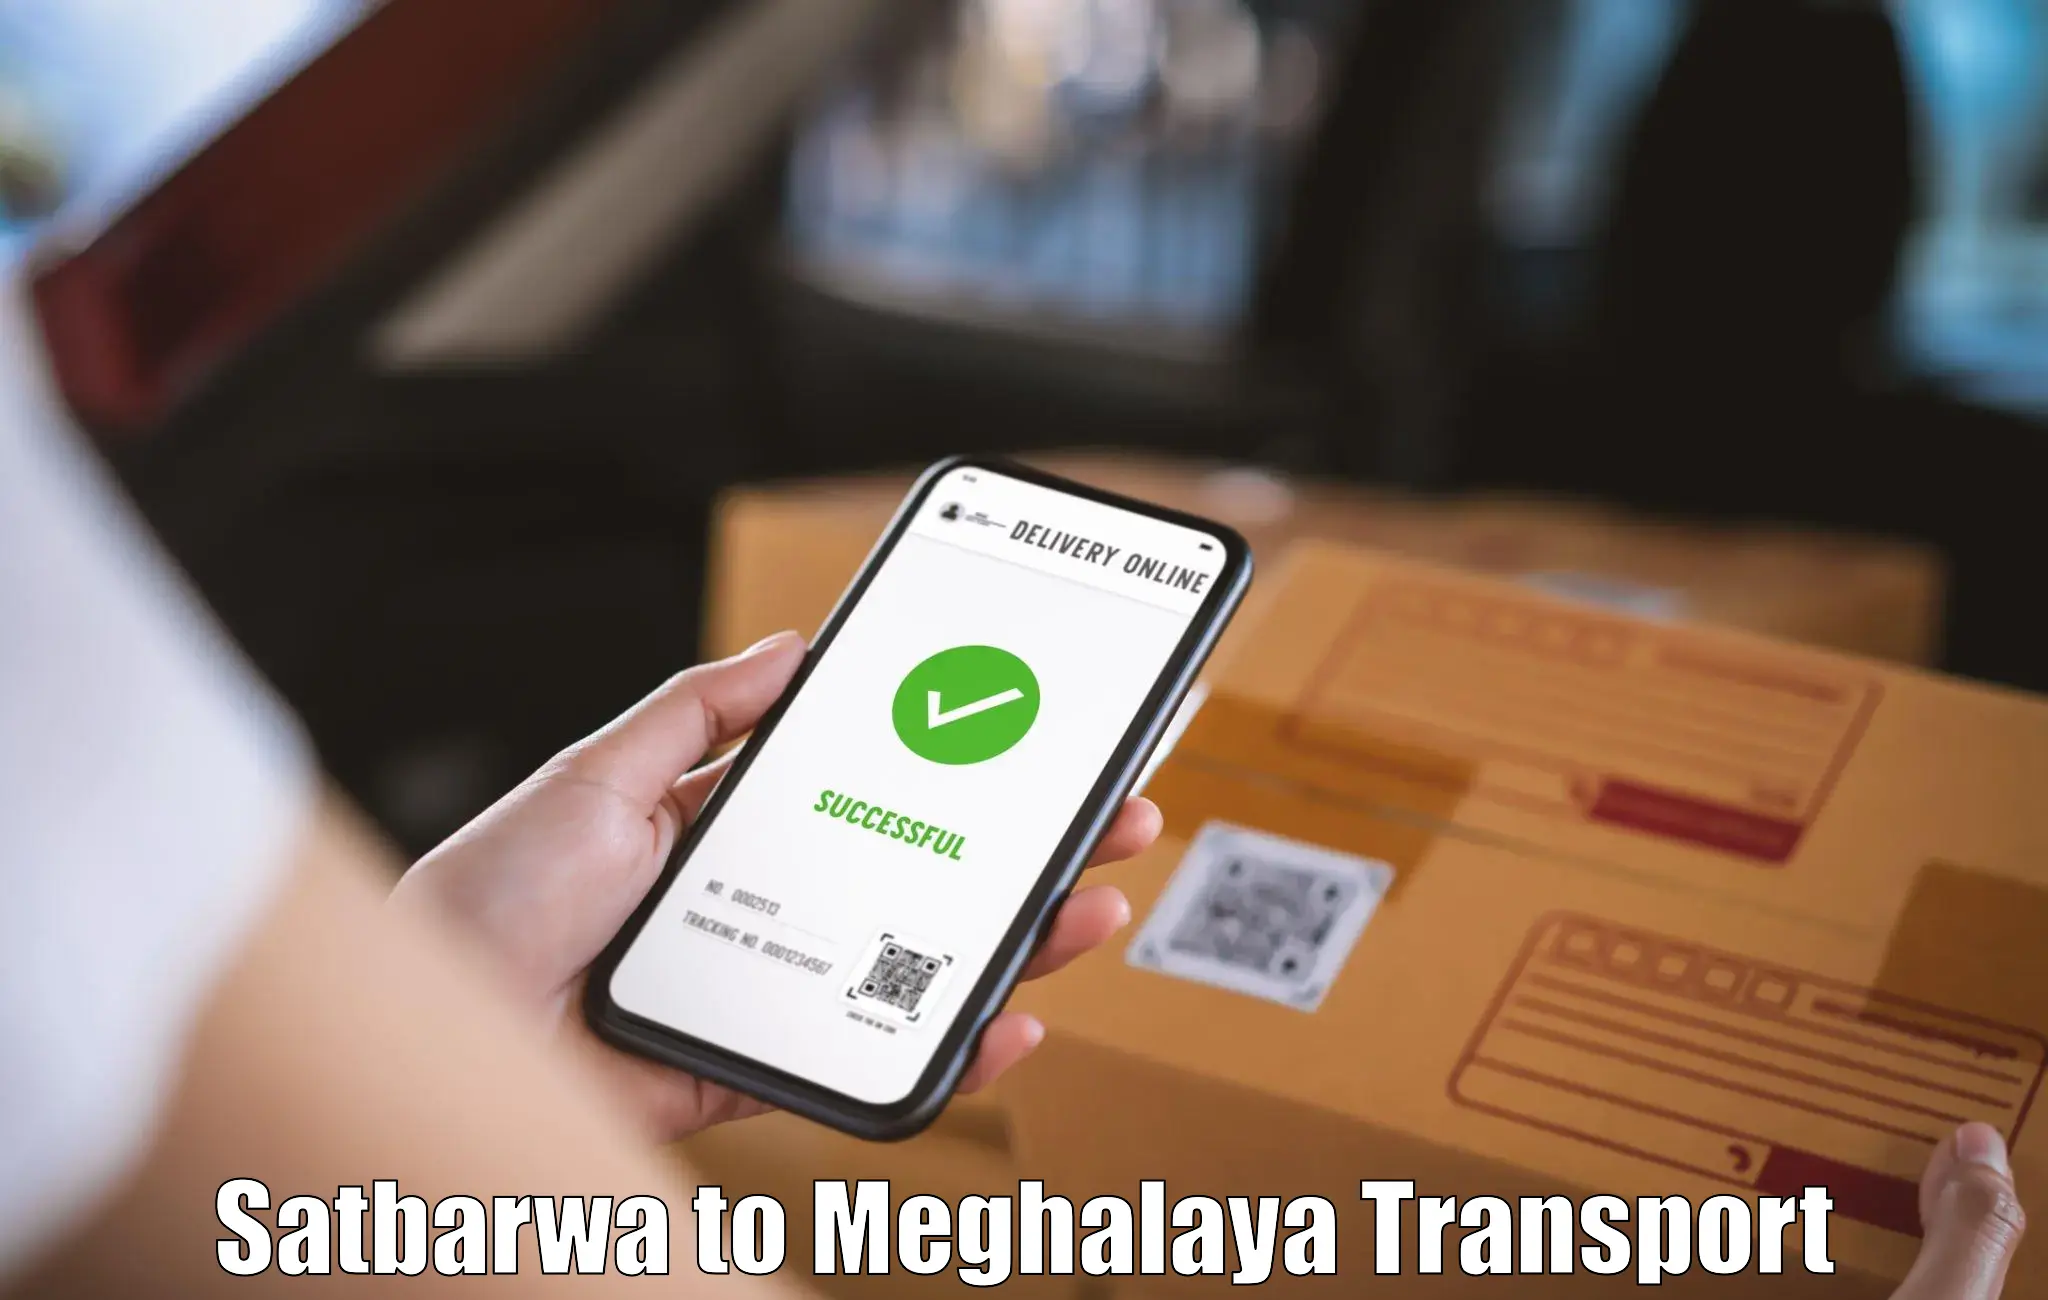 Furniture transport service Satbarwa to Mairang